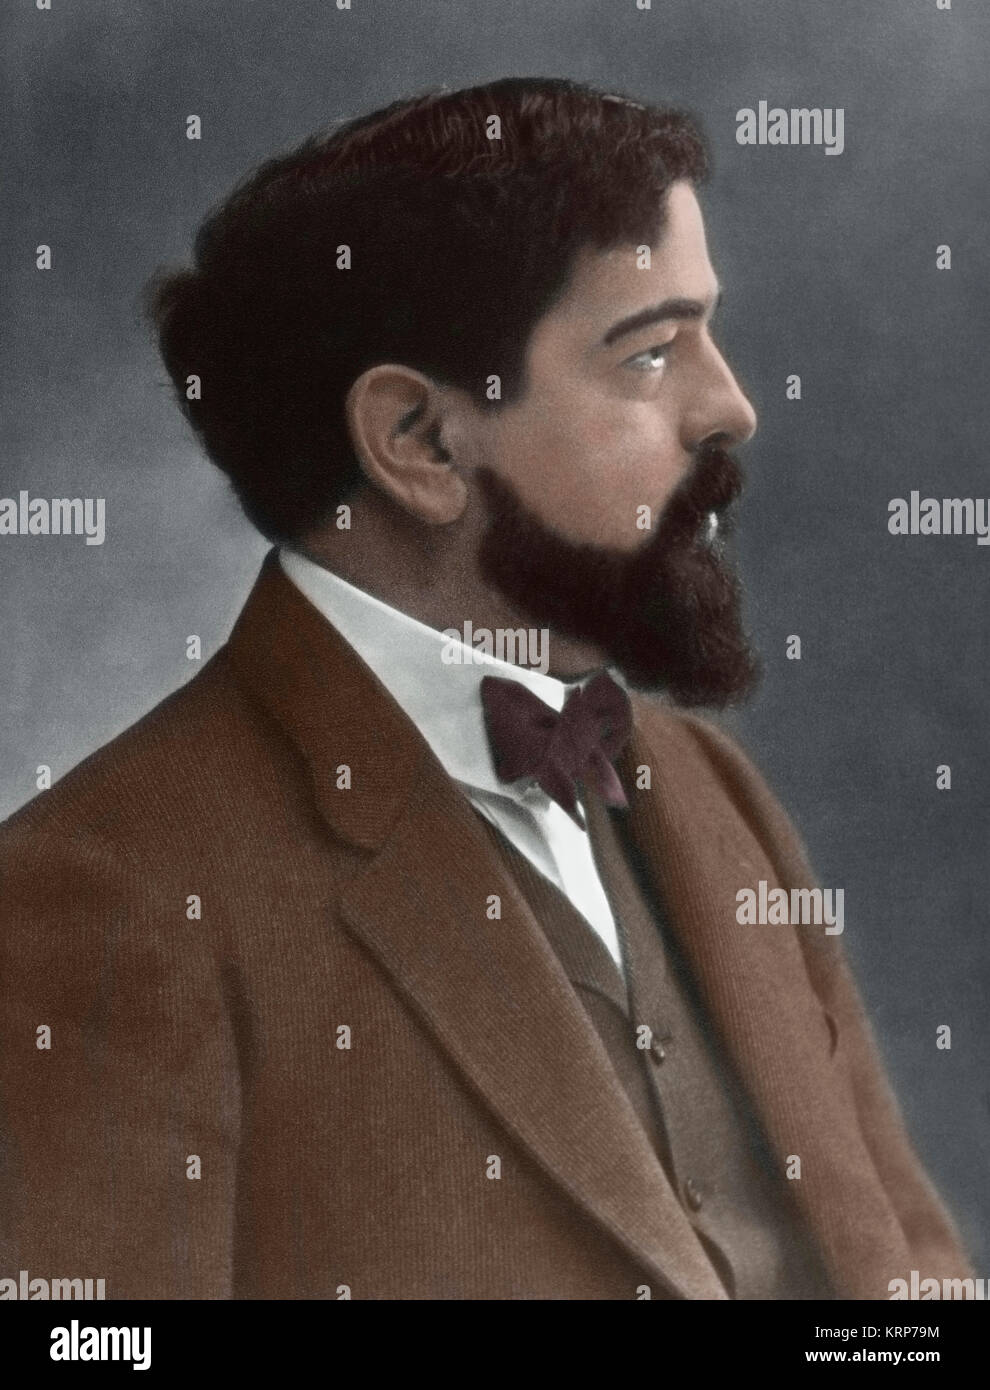 Claude Debussy (1862-1918). Französischen Komponisten. Porträt. Fotografie. Gefärbt. Stockfoto